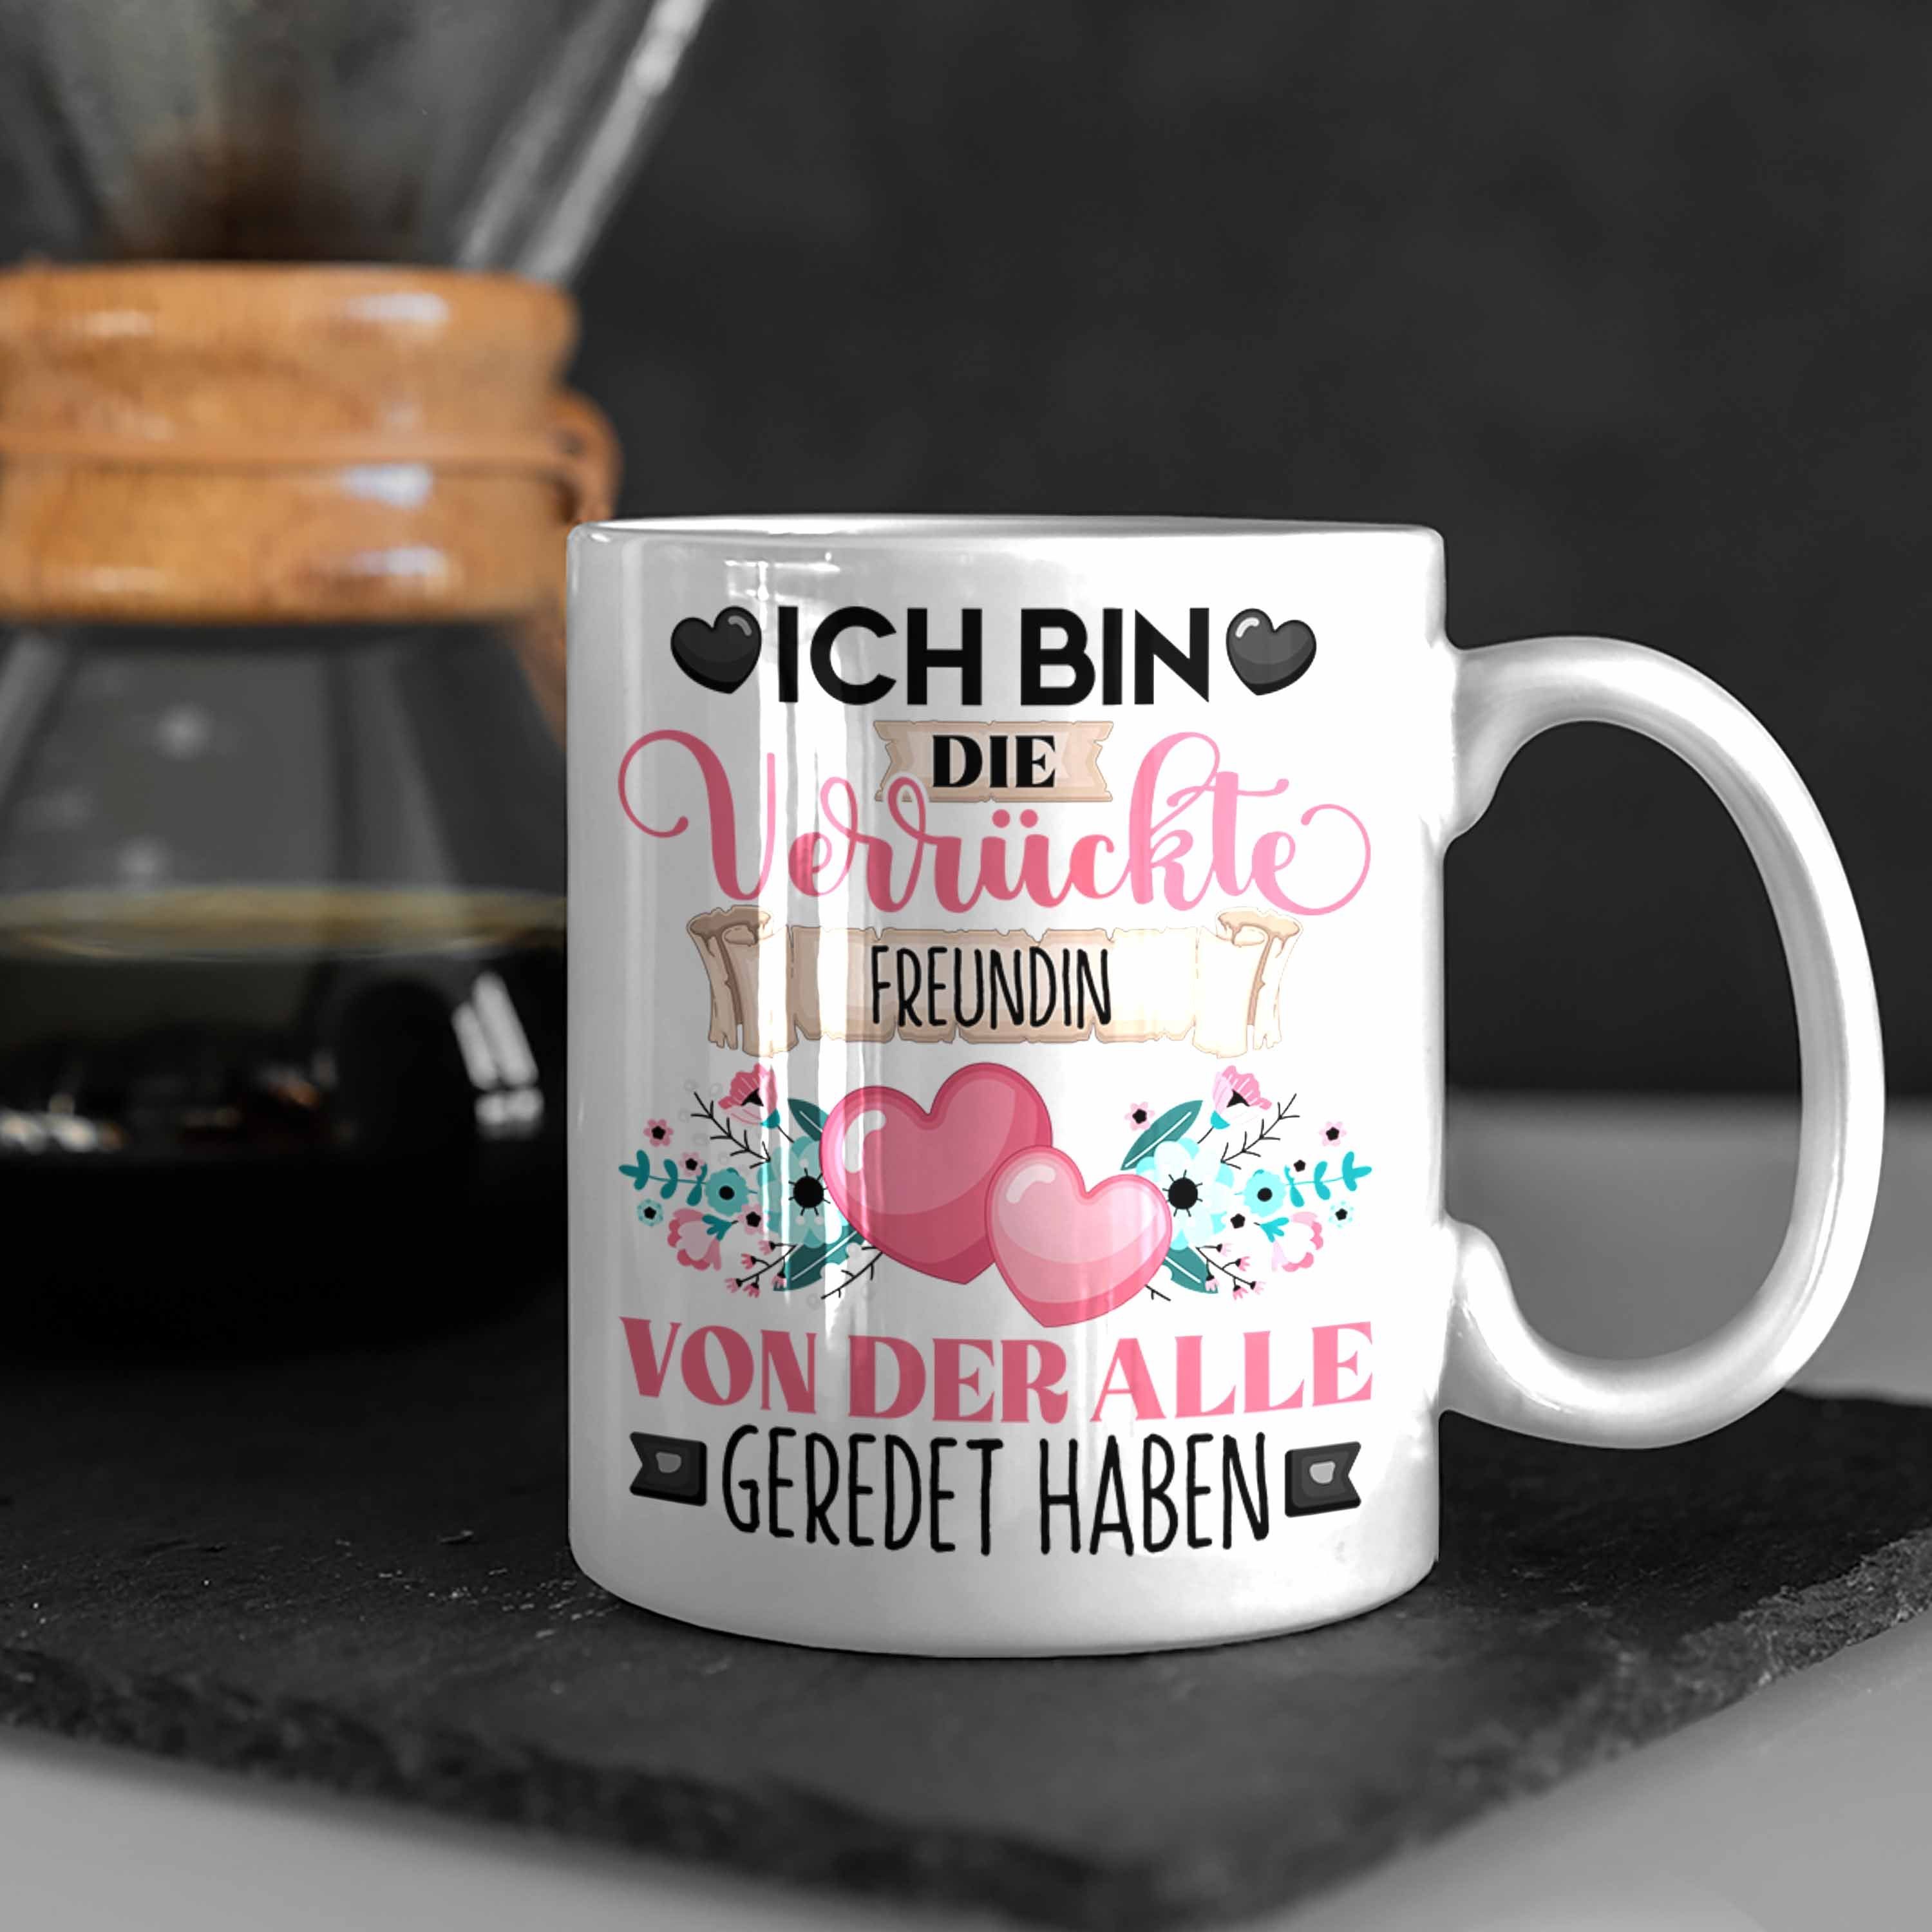 Trendation Tasse Freundin Weiss Ich Bin Verrü Geschenkidee Geschenk Lustiger Spruch Die Tasse